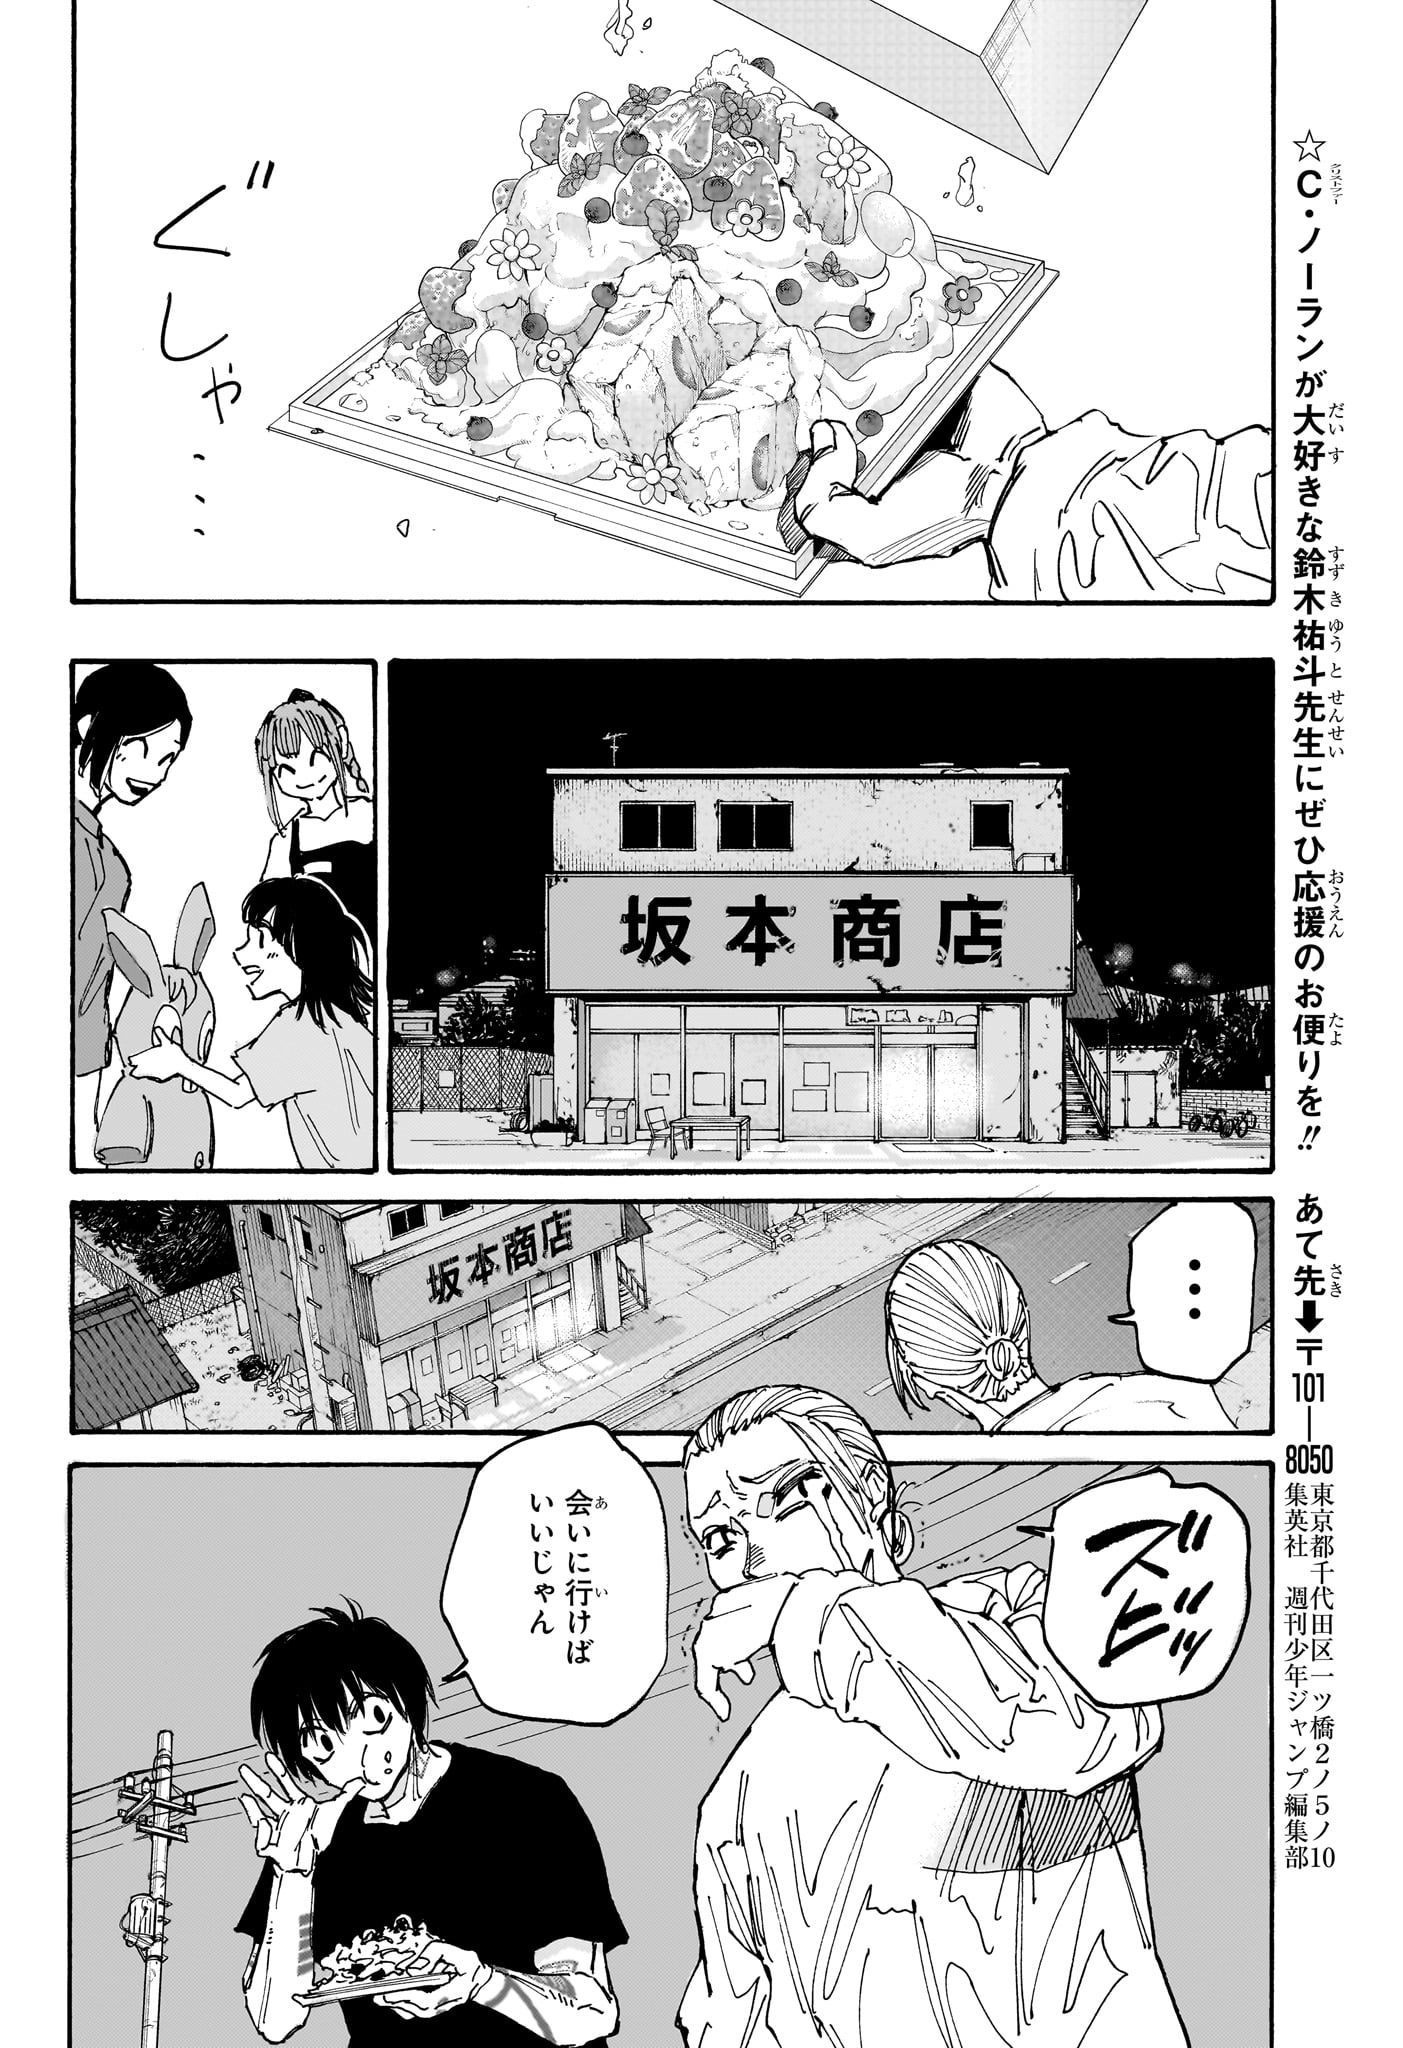 Sakamoto Days - Chapter 170 - Page 18